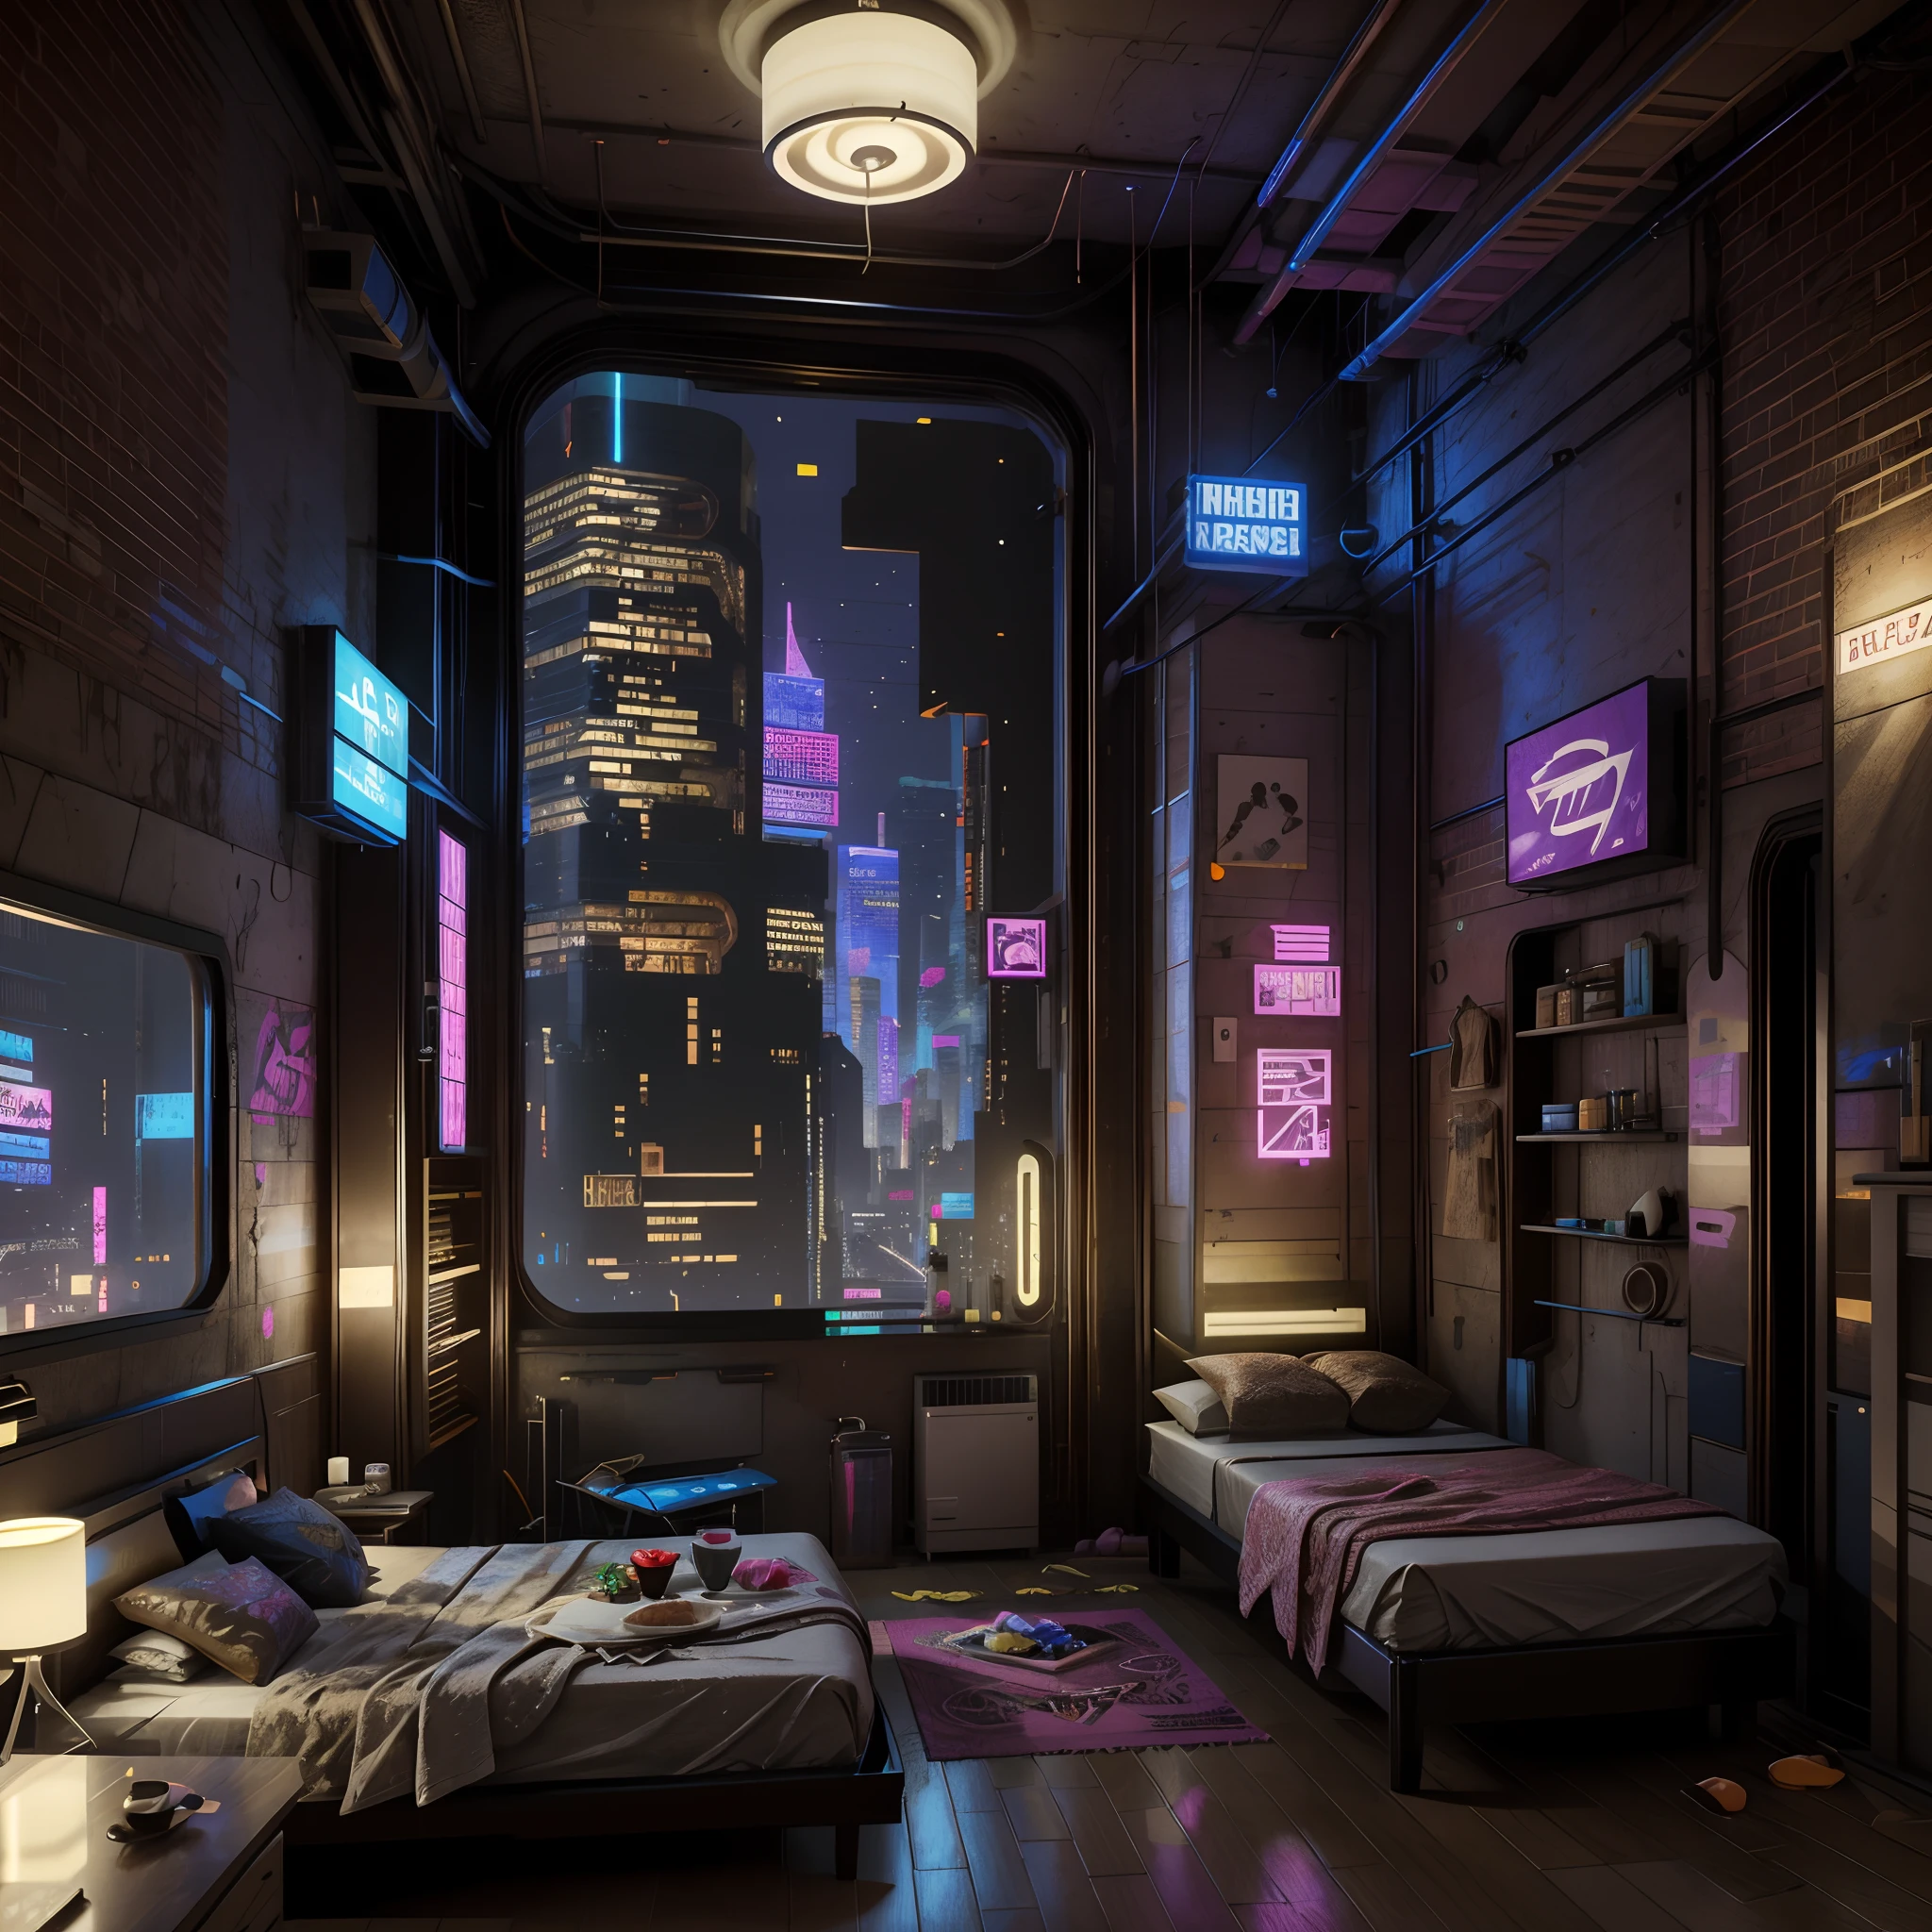 Esta é uma imagem de fantasia cyberpunk. Gere um quarto aconchegante cercado por uma cidade cyberpunk. O quarto funciona como um oásis no meio de uma caótica cidade cyberpunk. O quarto tem janelas. Pelas janelas do quarto o colorido, Muito detalhado, e uma bela e complexa paisagem urbana cyberpunk é visível. A imagem deve ser dinâmica, atraente e realista. (((Obra de arte))), (((melhor qualidade))), ((ultra-detalhado)),(ilustração CG altamente detalhada)